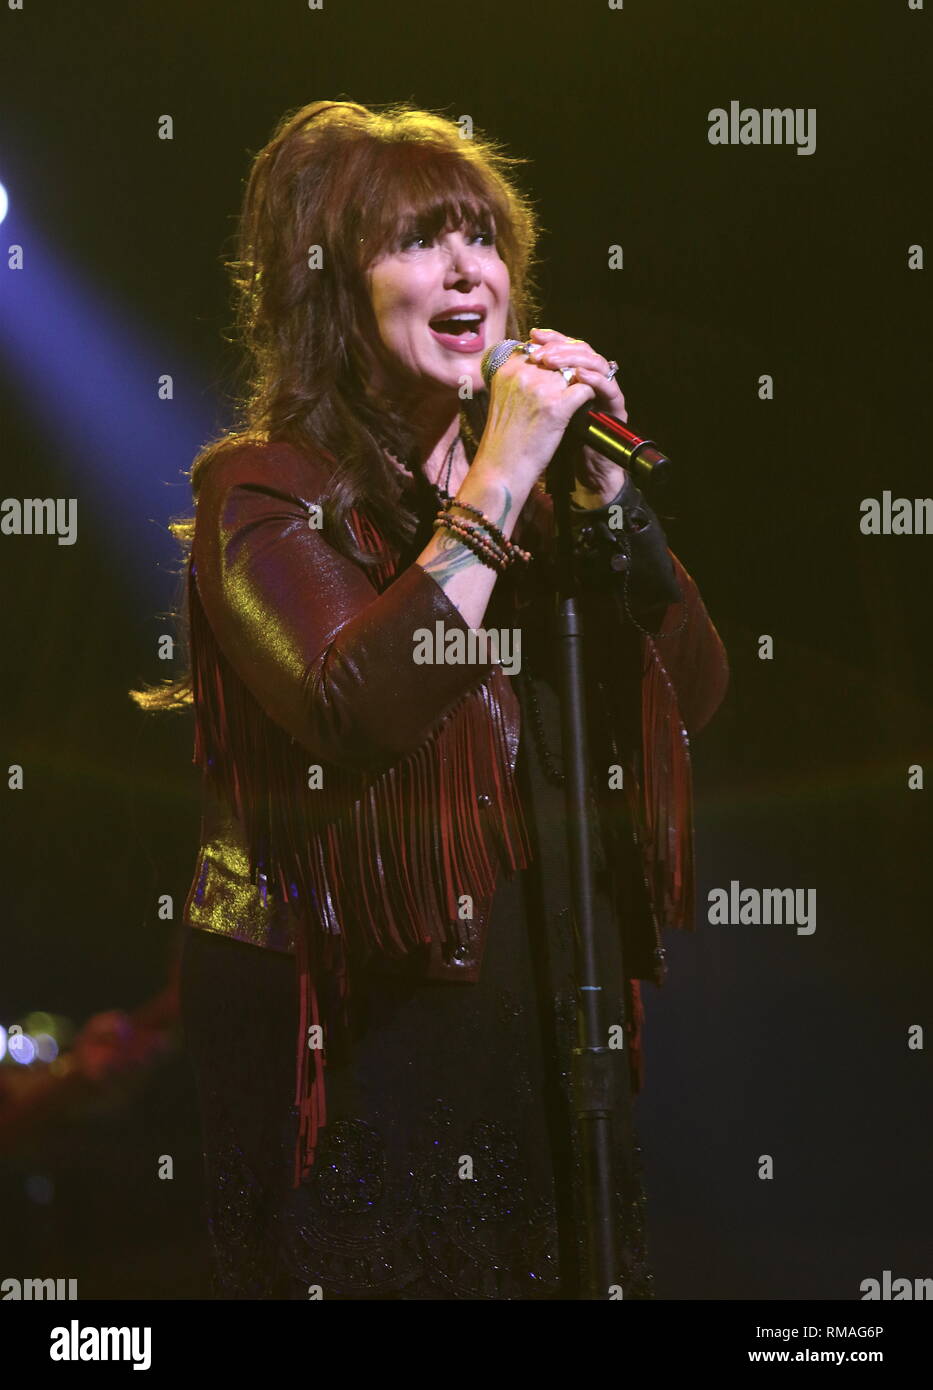 Il cantante Ann Wilson è mostrato esibirsi sul palco durante un 'live' aspetto di concerto con il cuore. Foto Stock